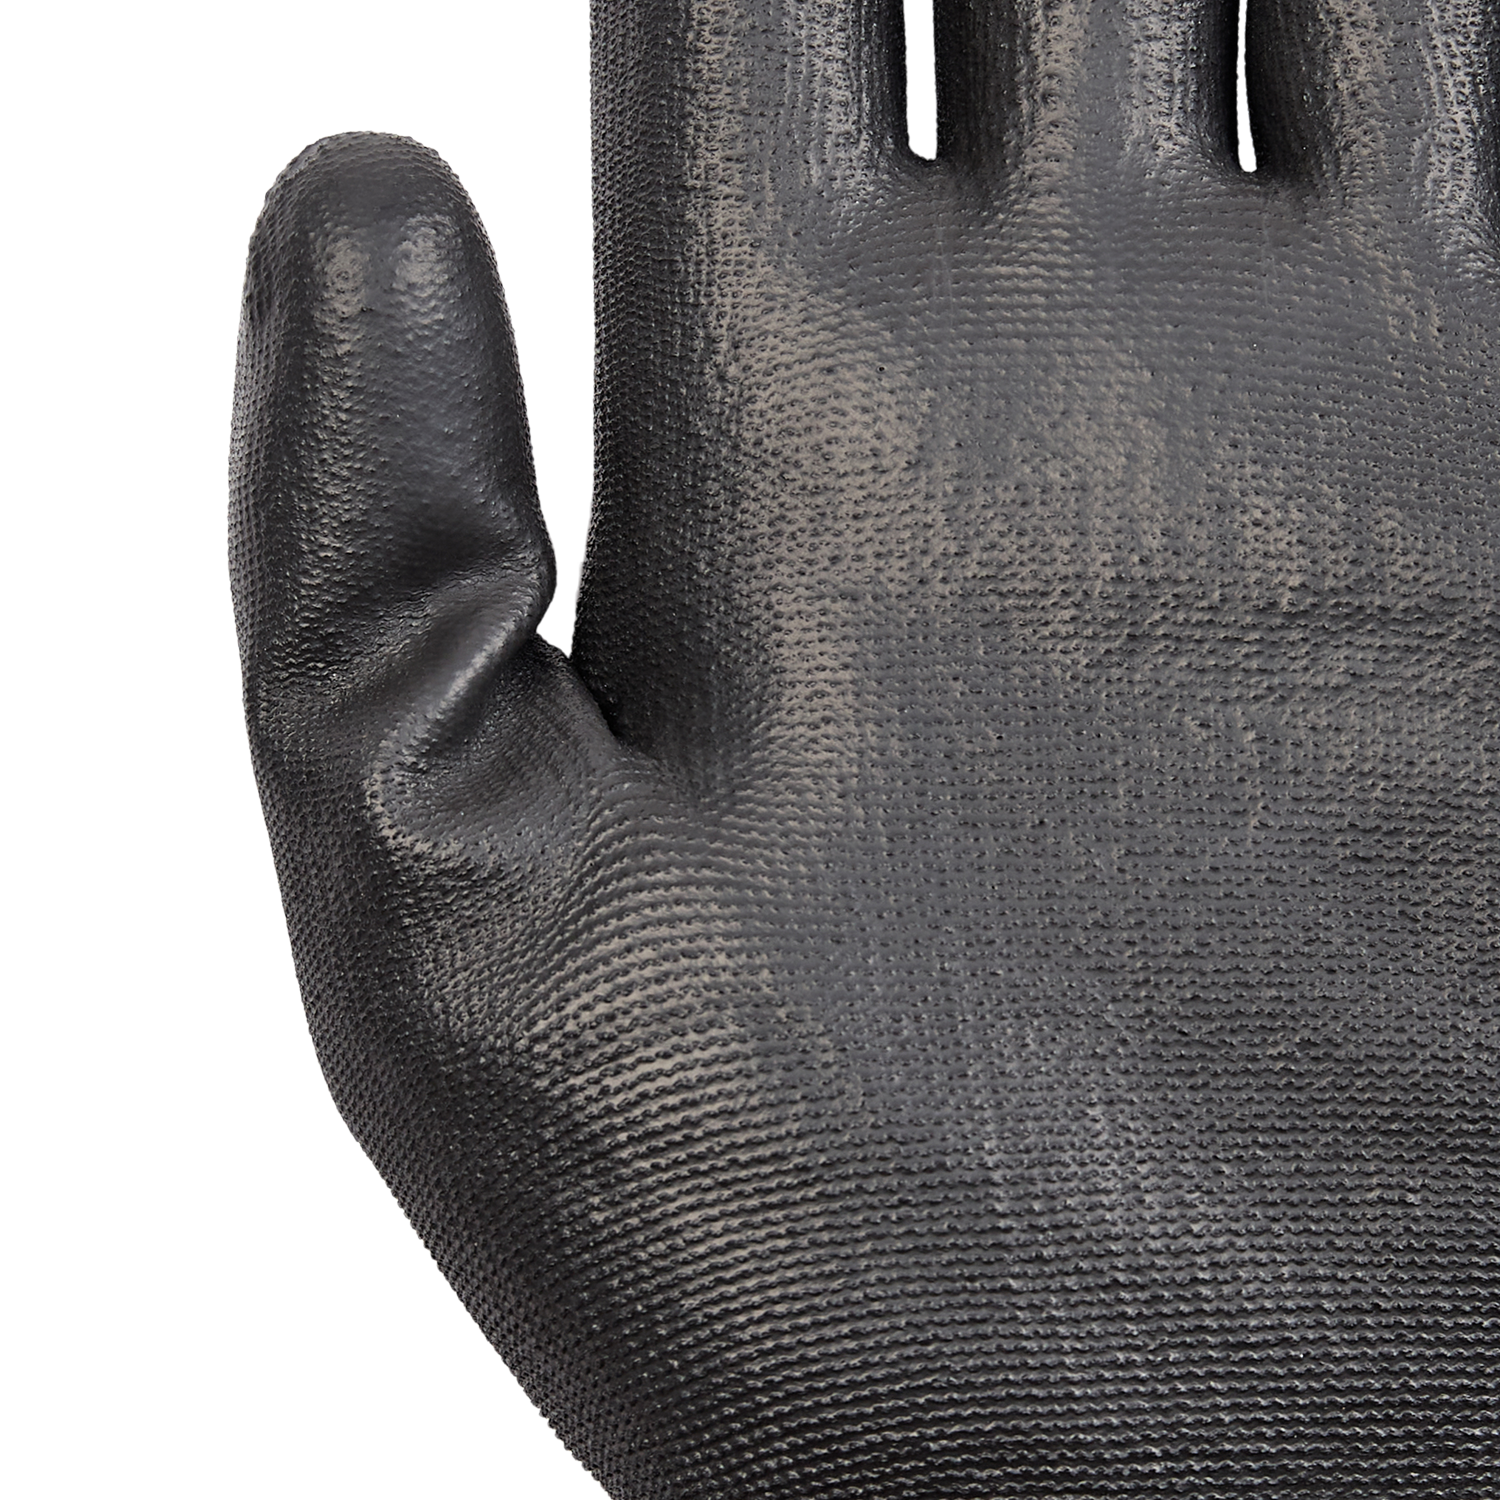 NORSE PU Black assembly gloves size 9